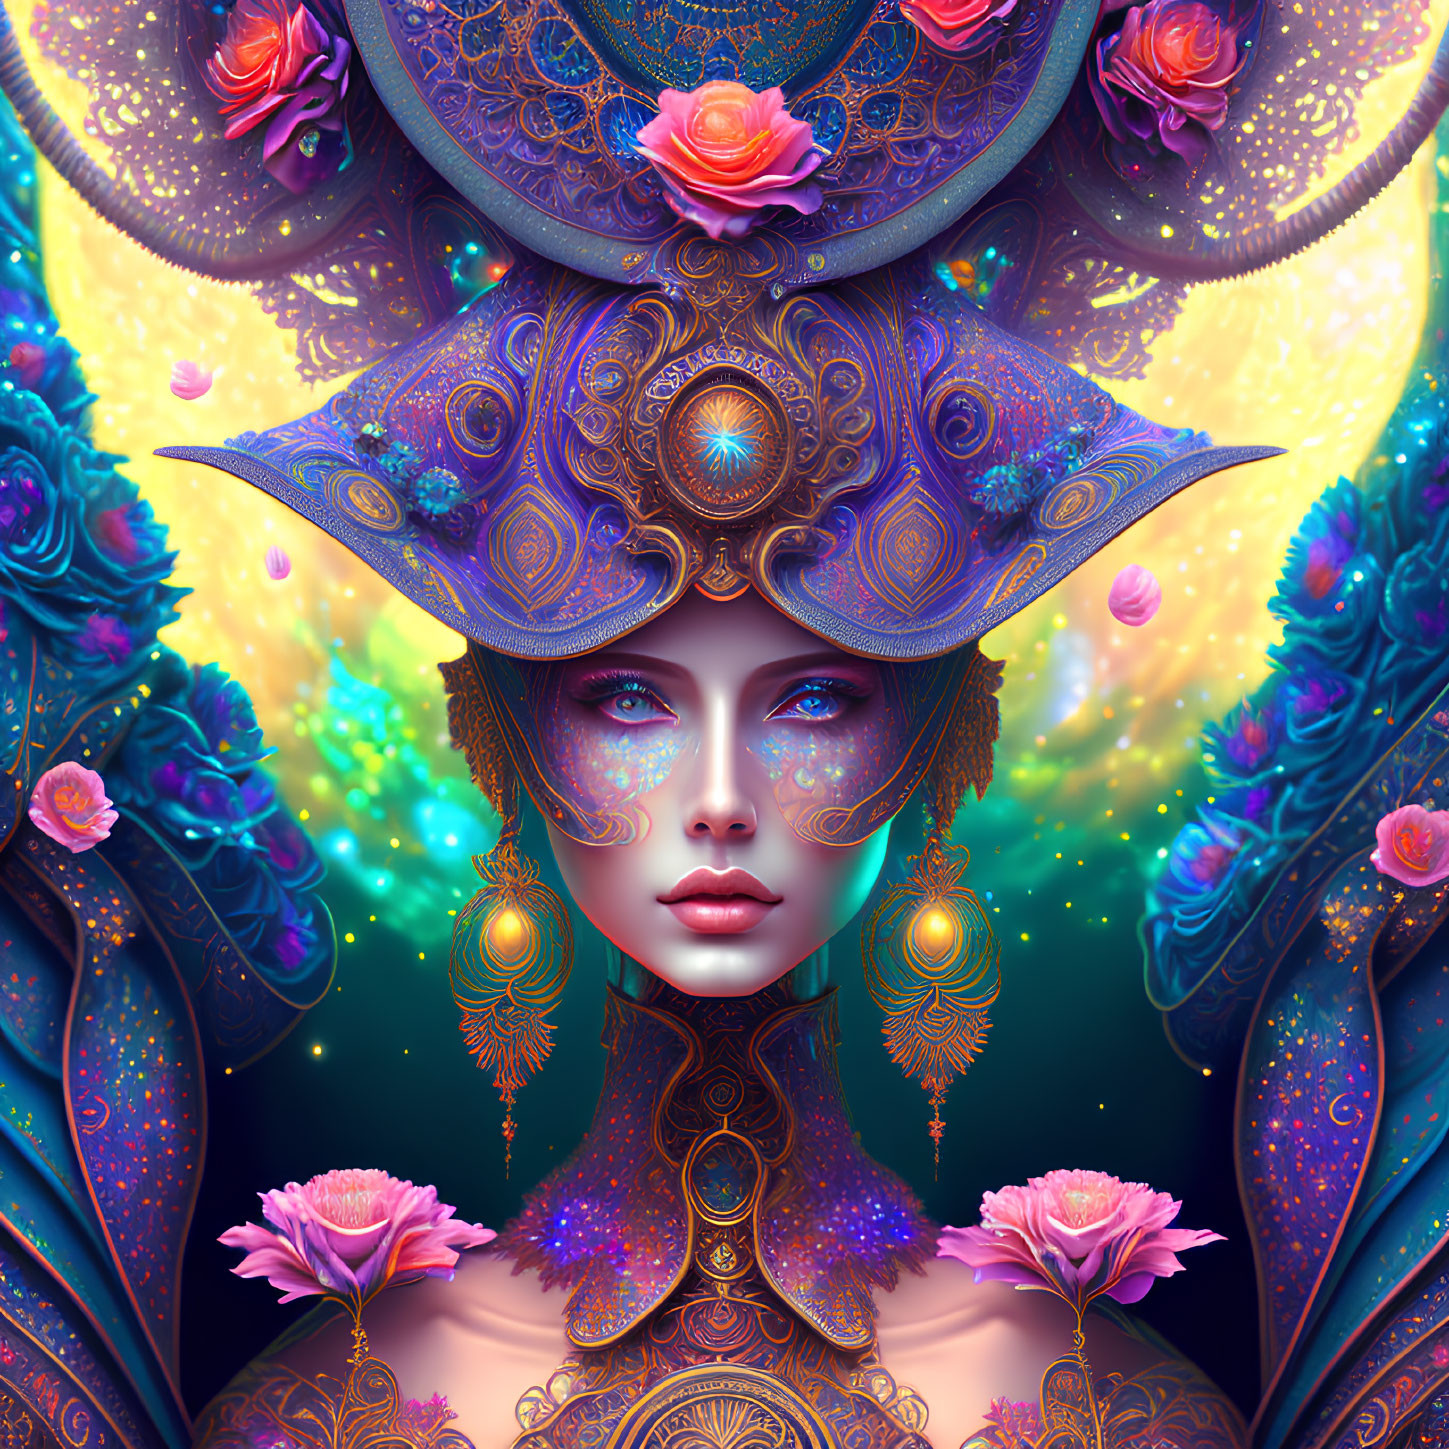 Fantasy Portrait: Purple-skinned Female with Golden Headdress